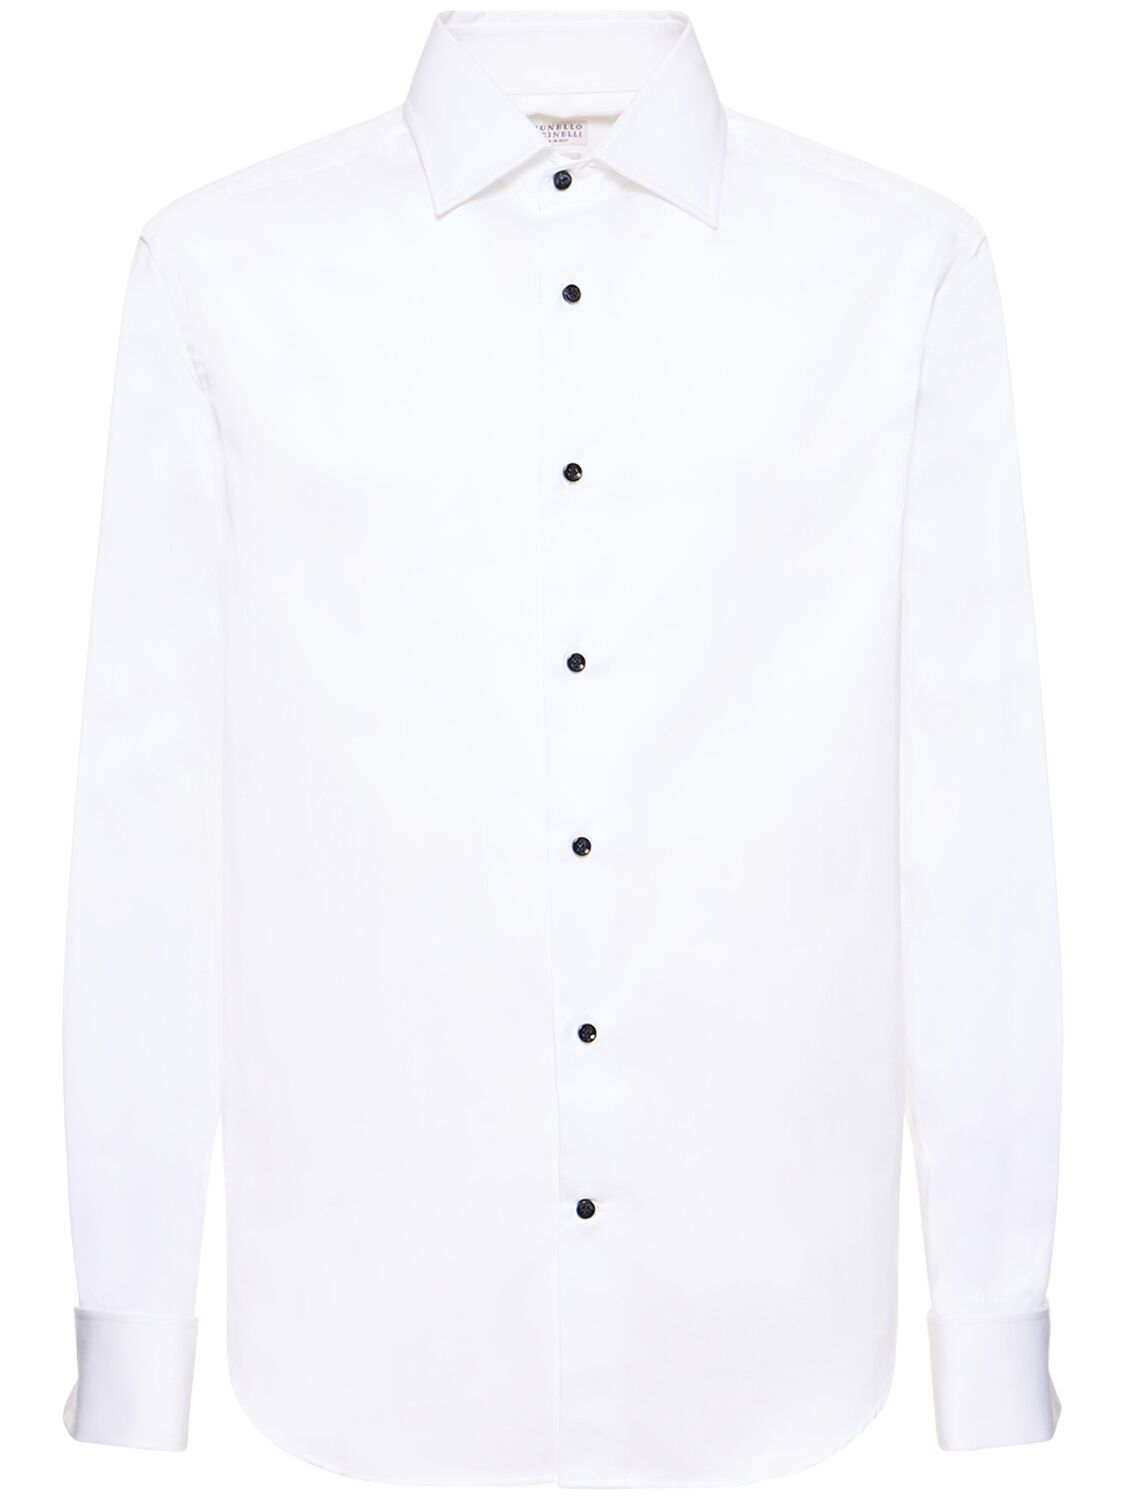 Image of Cotton Tuxedo Shirt